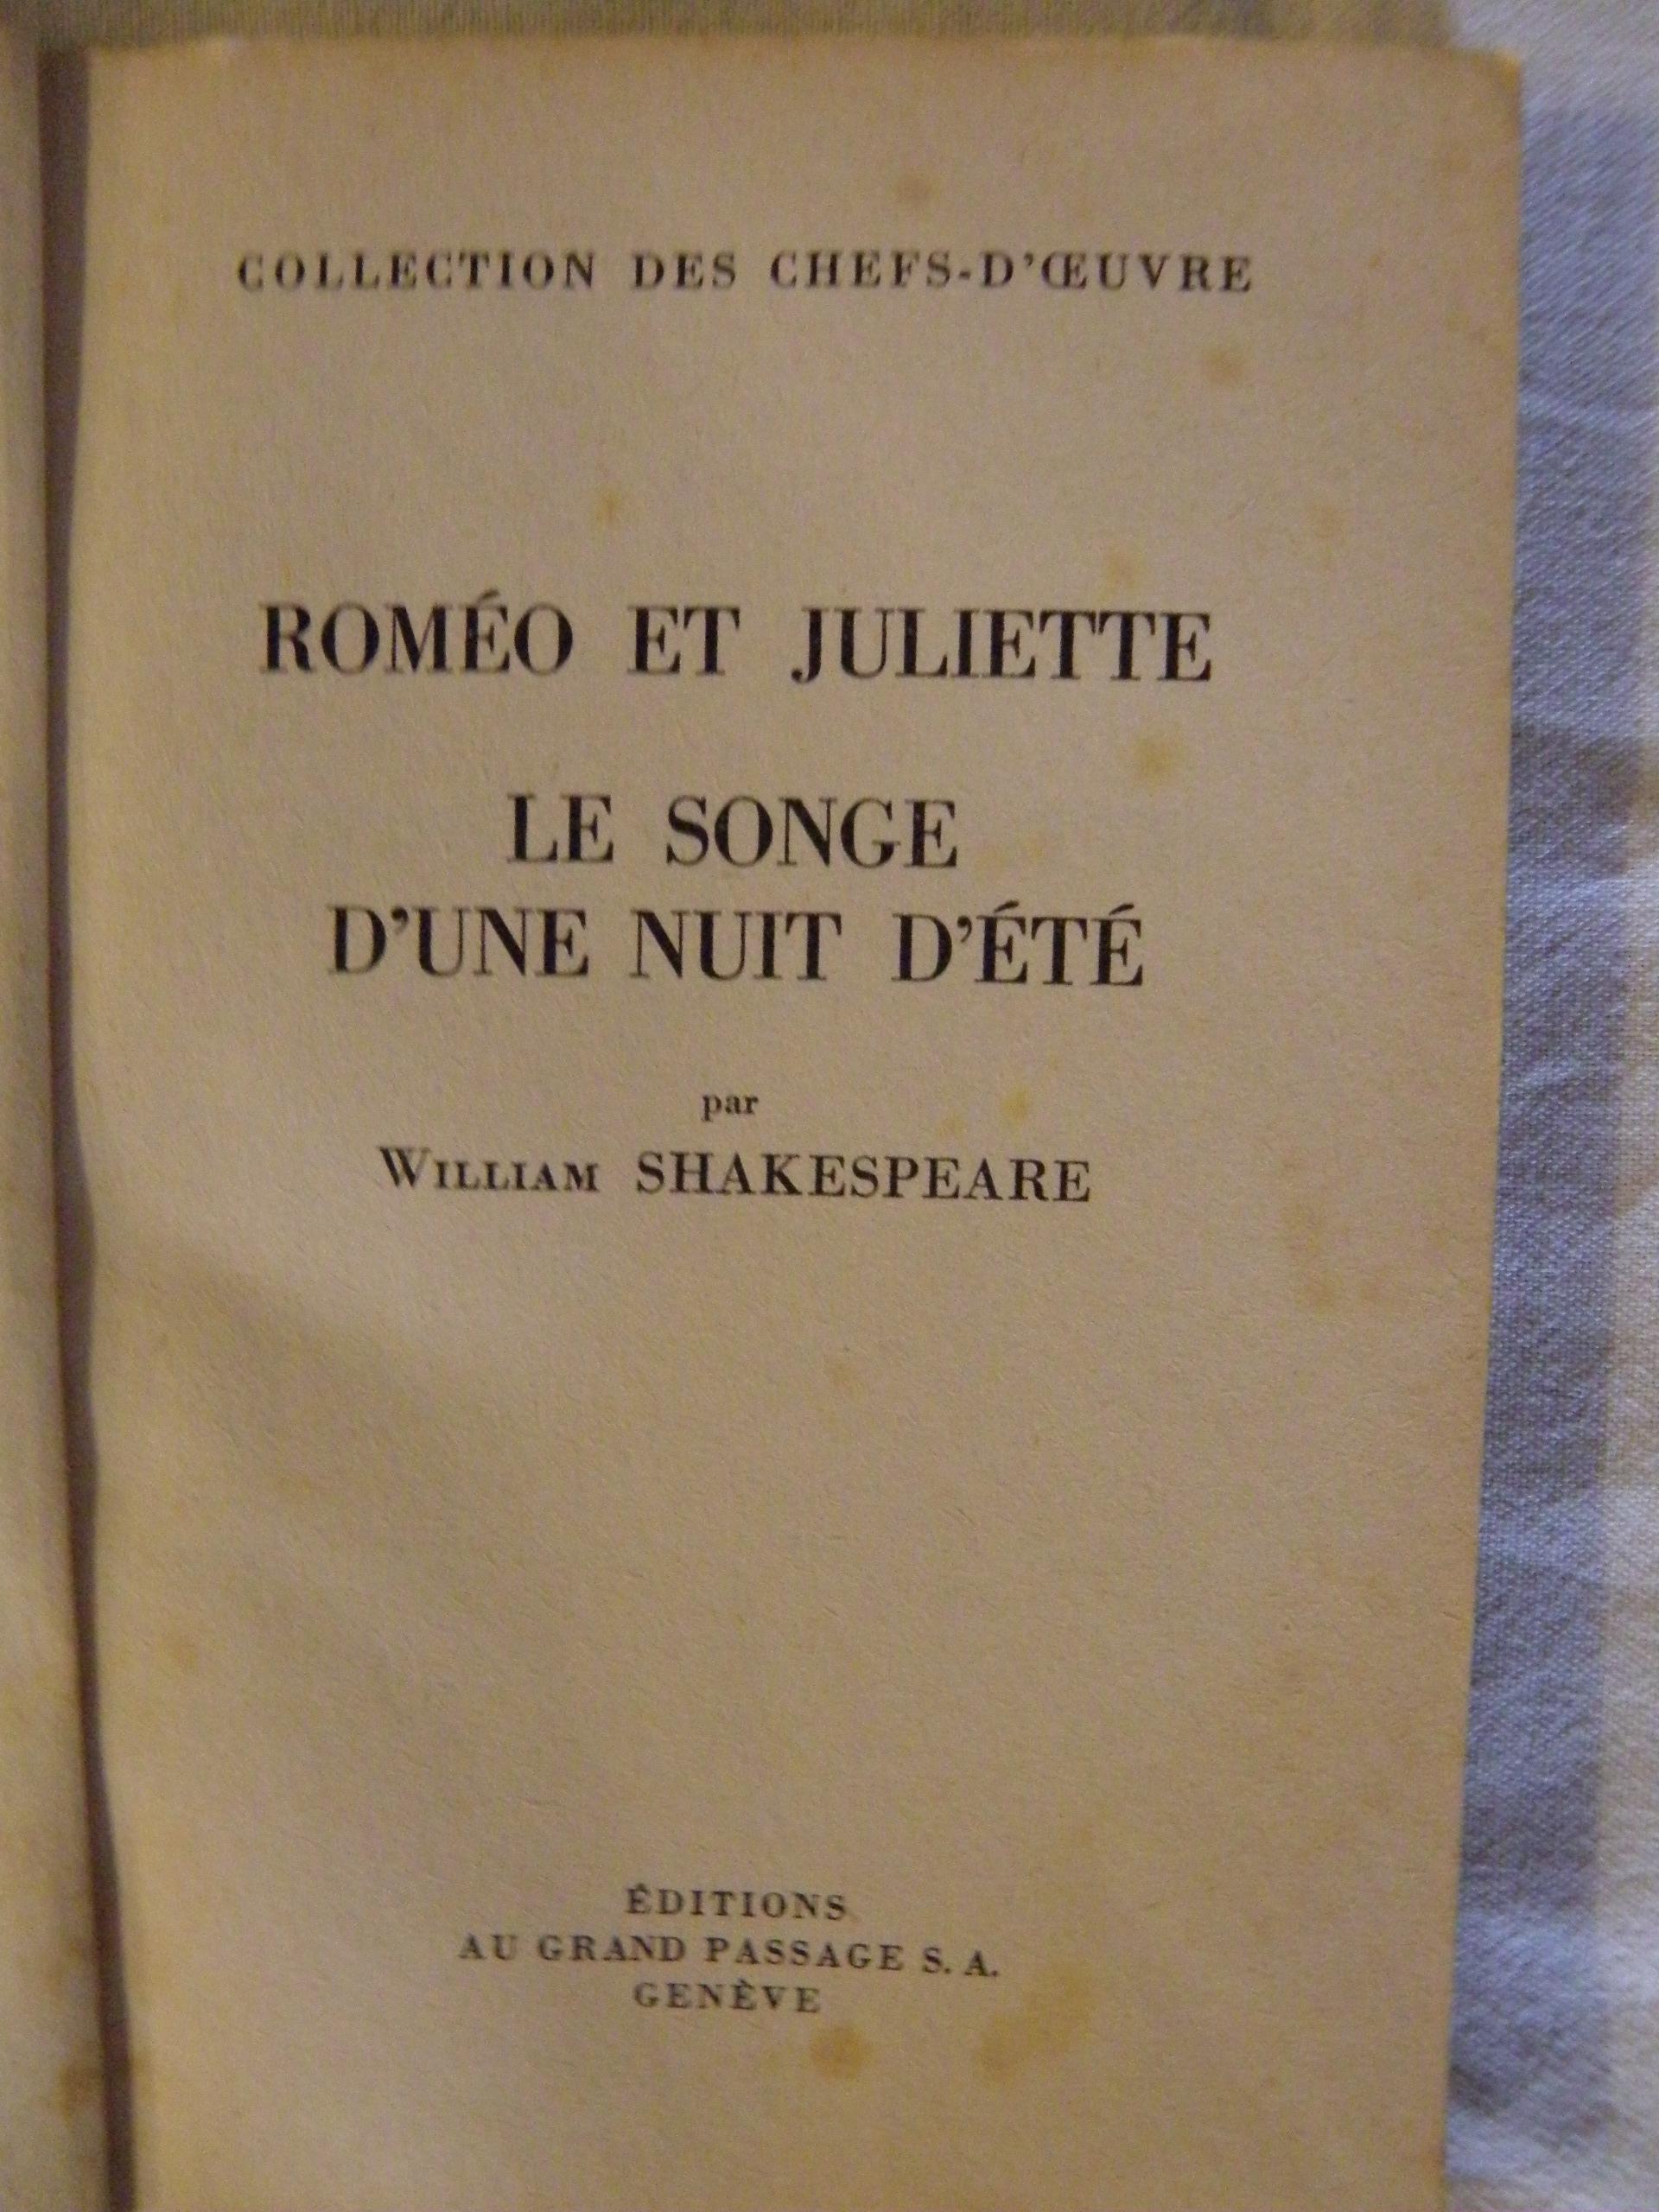 troc de troc petit livre 1944, roméo et juliette shakespeare image 1